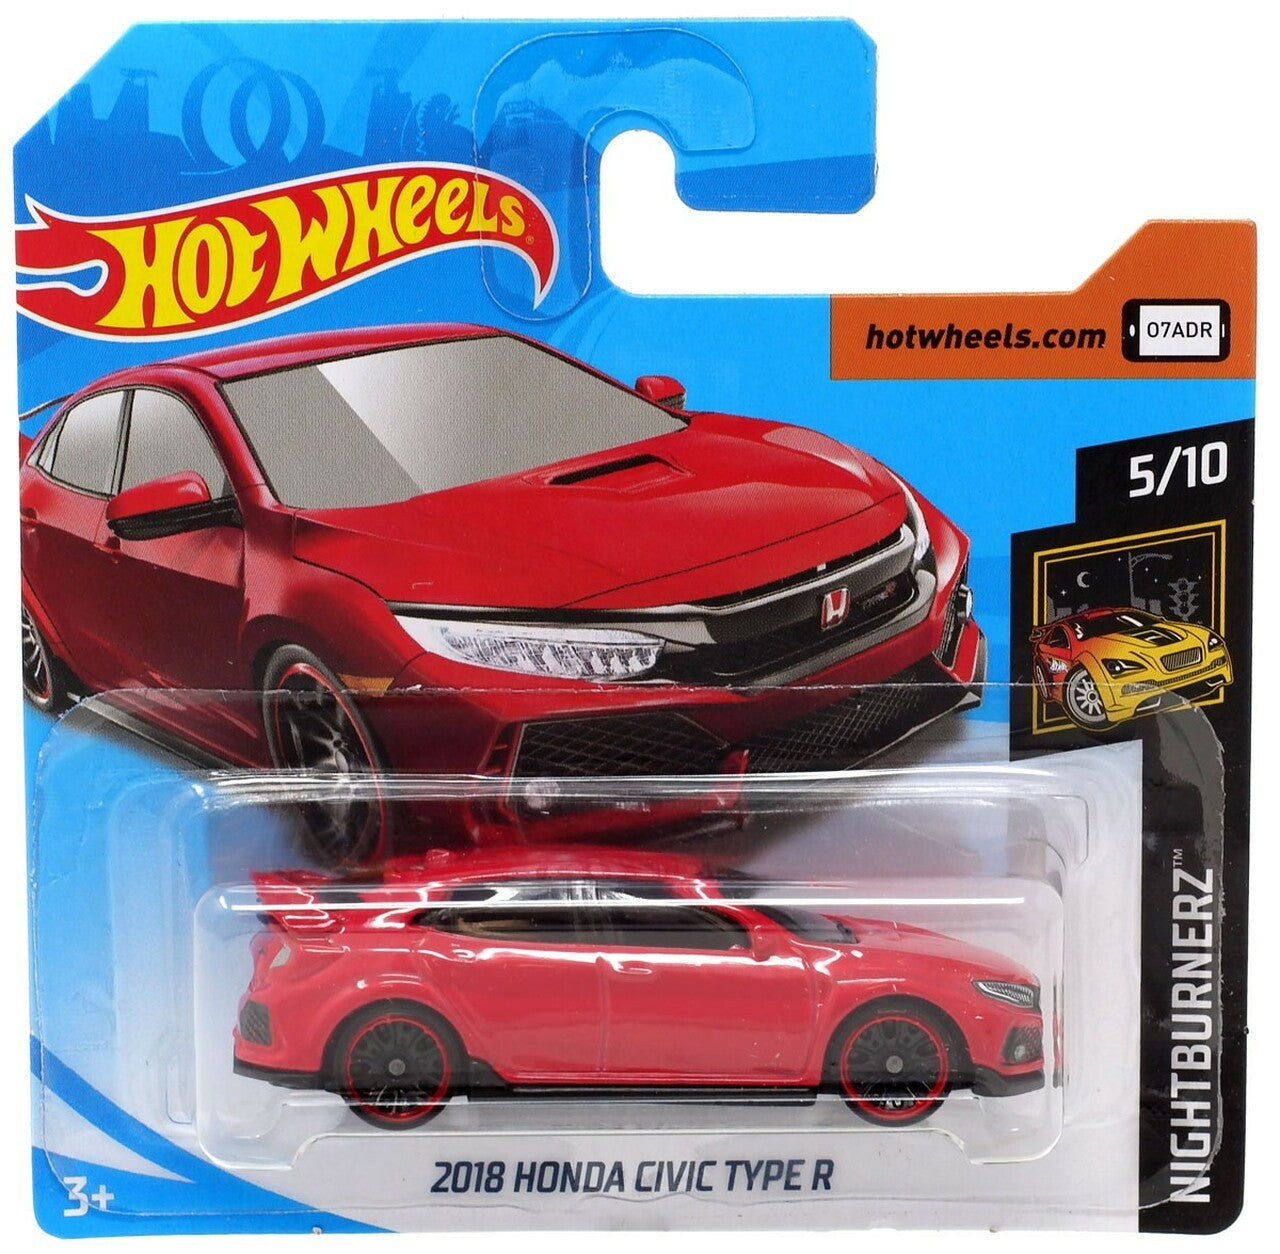 @ Hot Wheels 2018 Honda Civic Type R FYB72 5/10